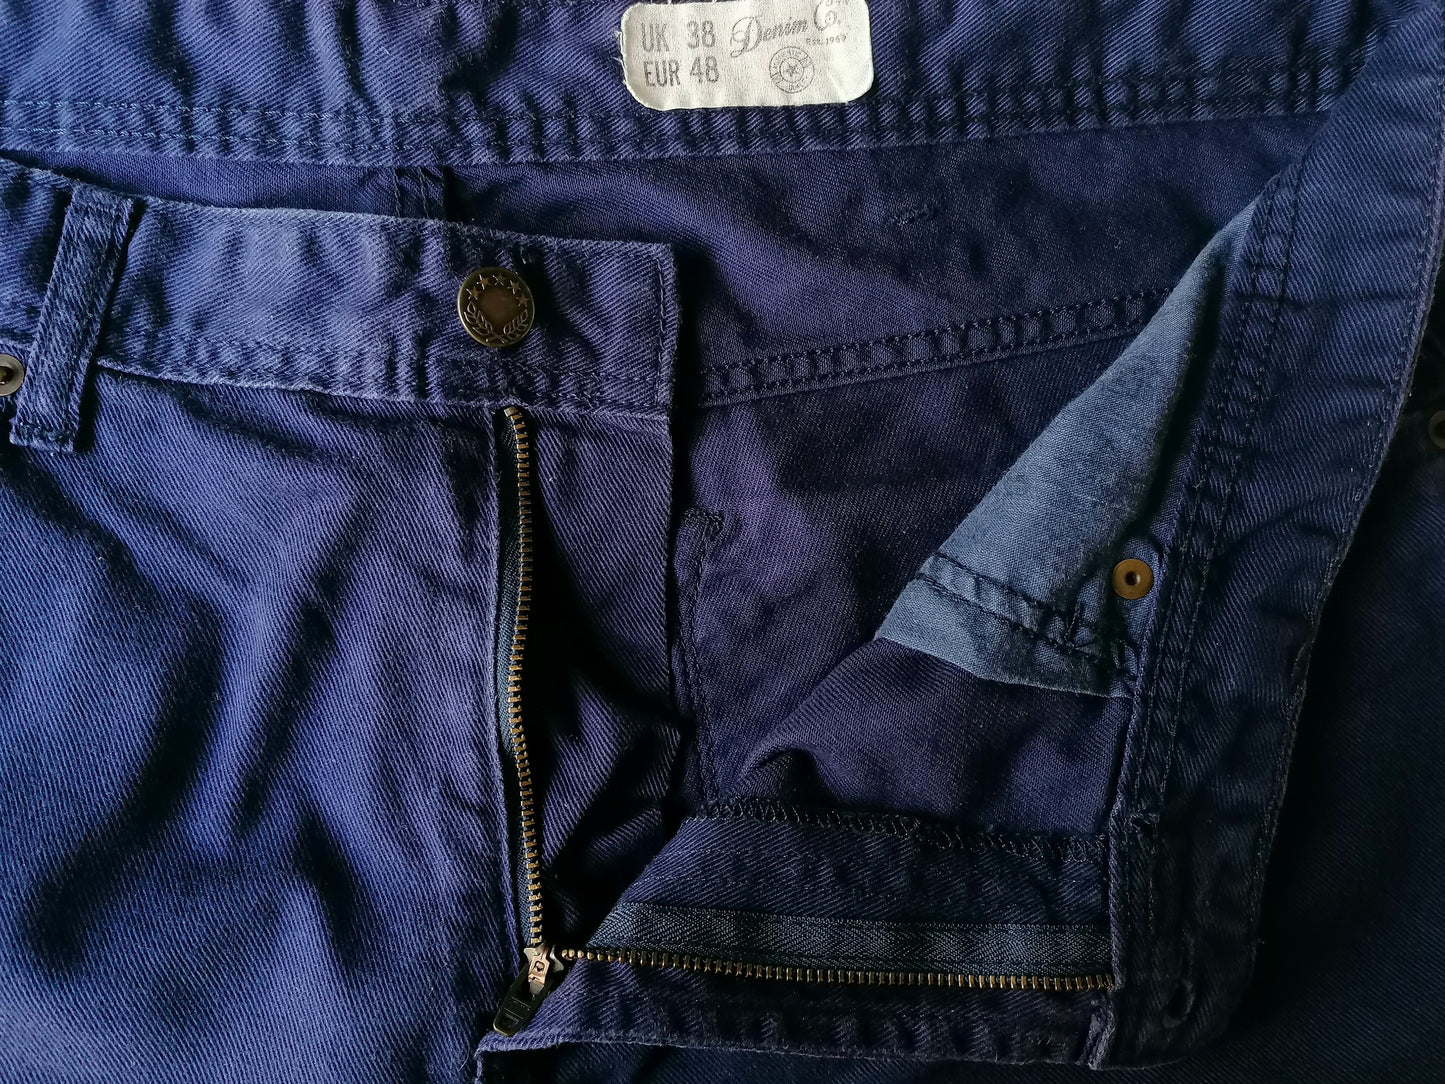 Pantalones cortos de mezclilla. Color azul oscuro. Tamaño W38.